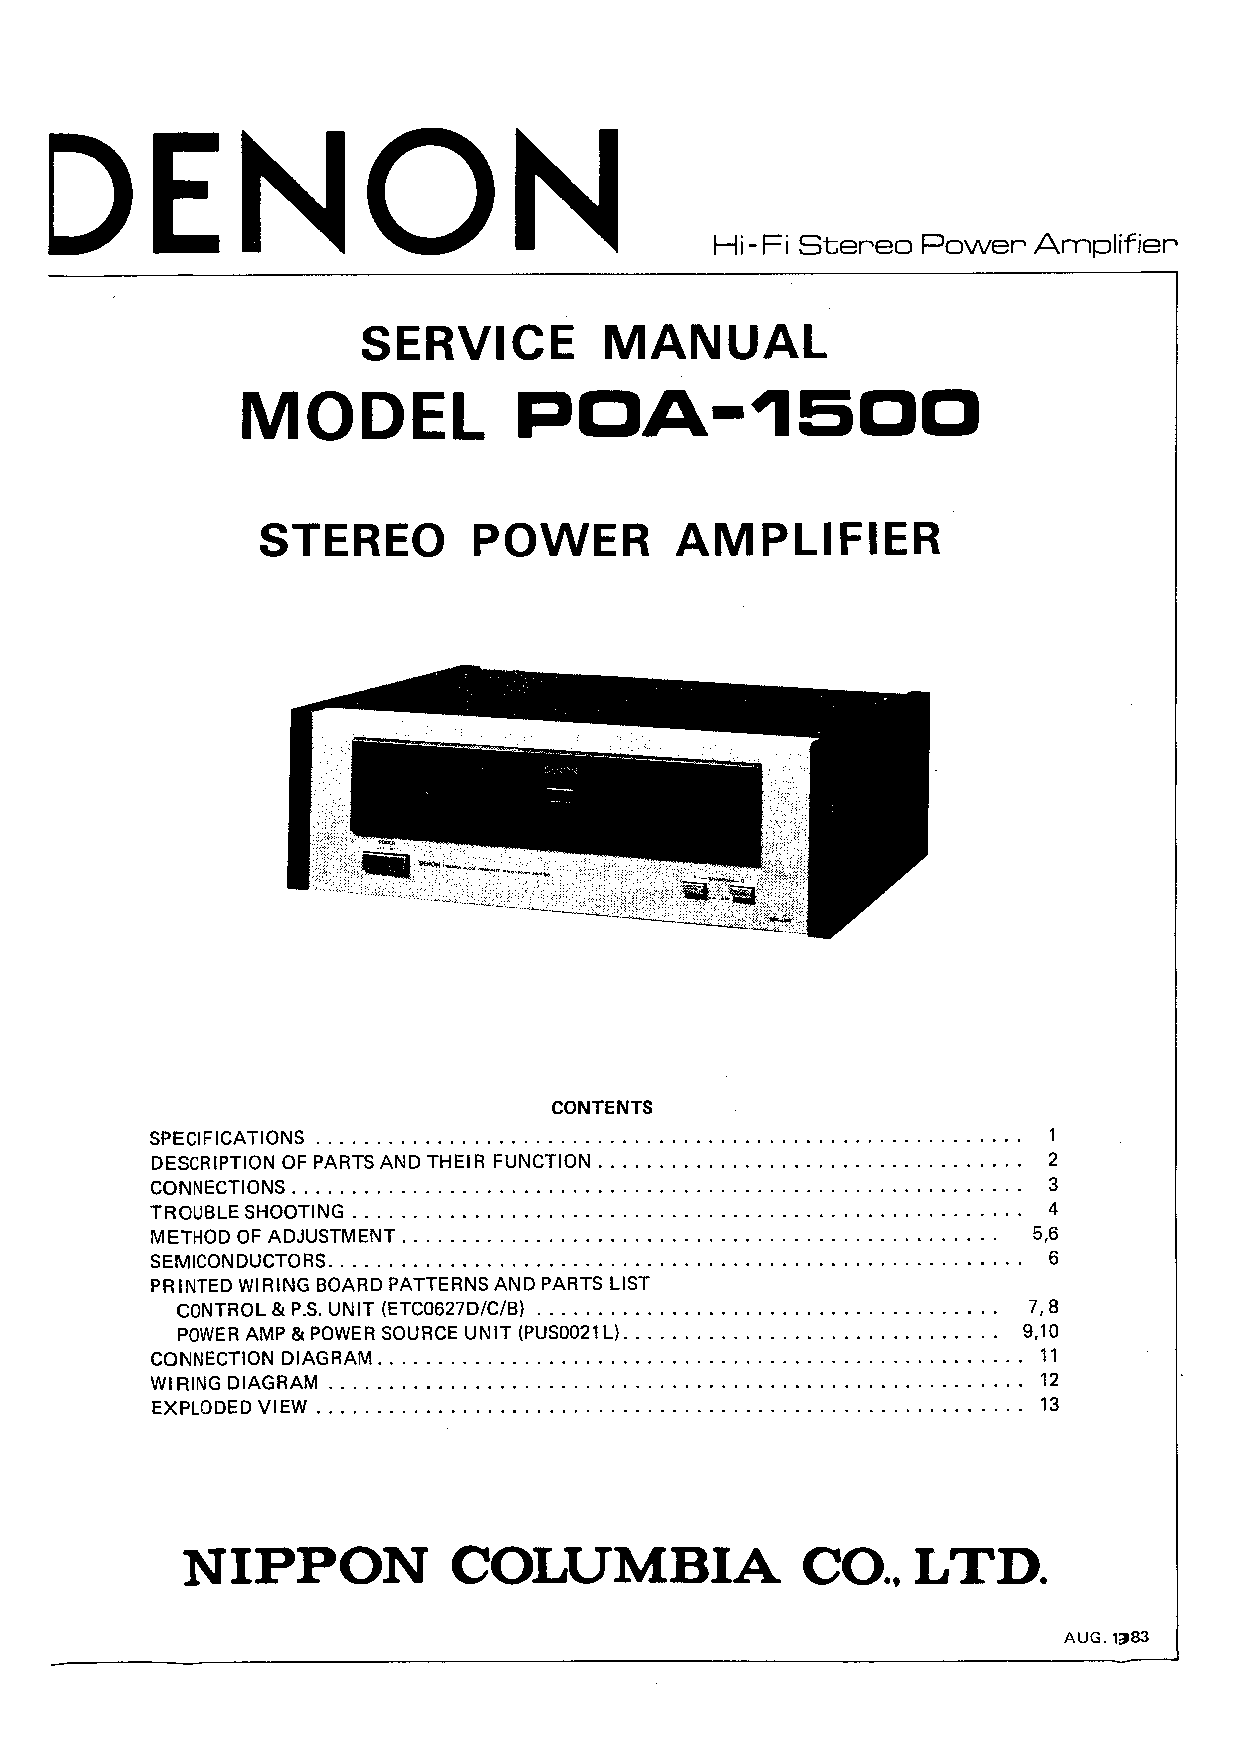 Denon POA-1500 Service Manual